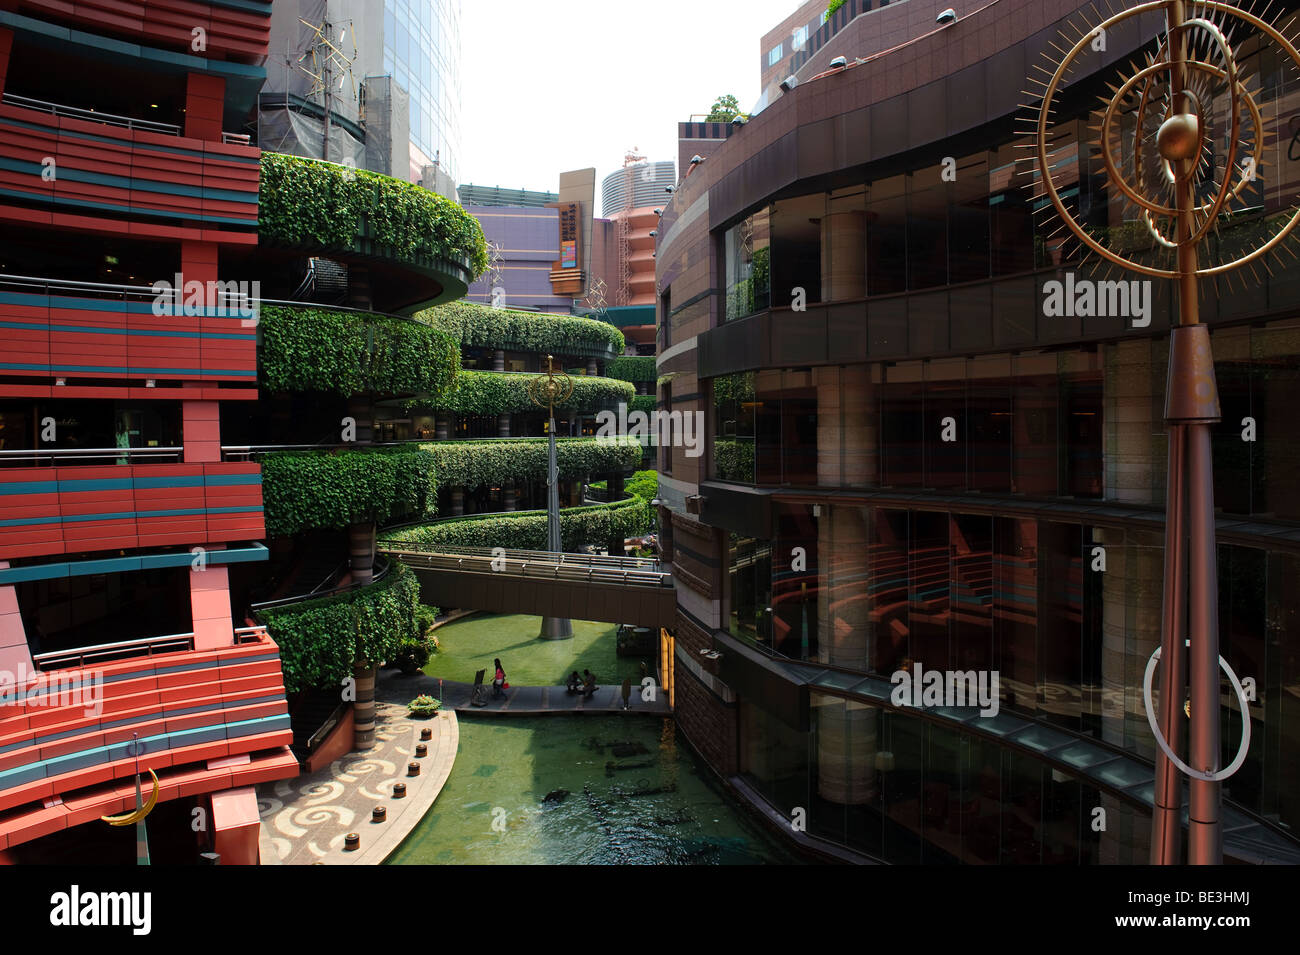 Il futuristico Canal City shopping mall, citta' di Fukuoka, prefettura di Fukuoka, Giappone, 3 giugno 2009. Foto Stock